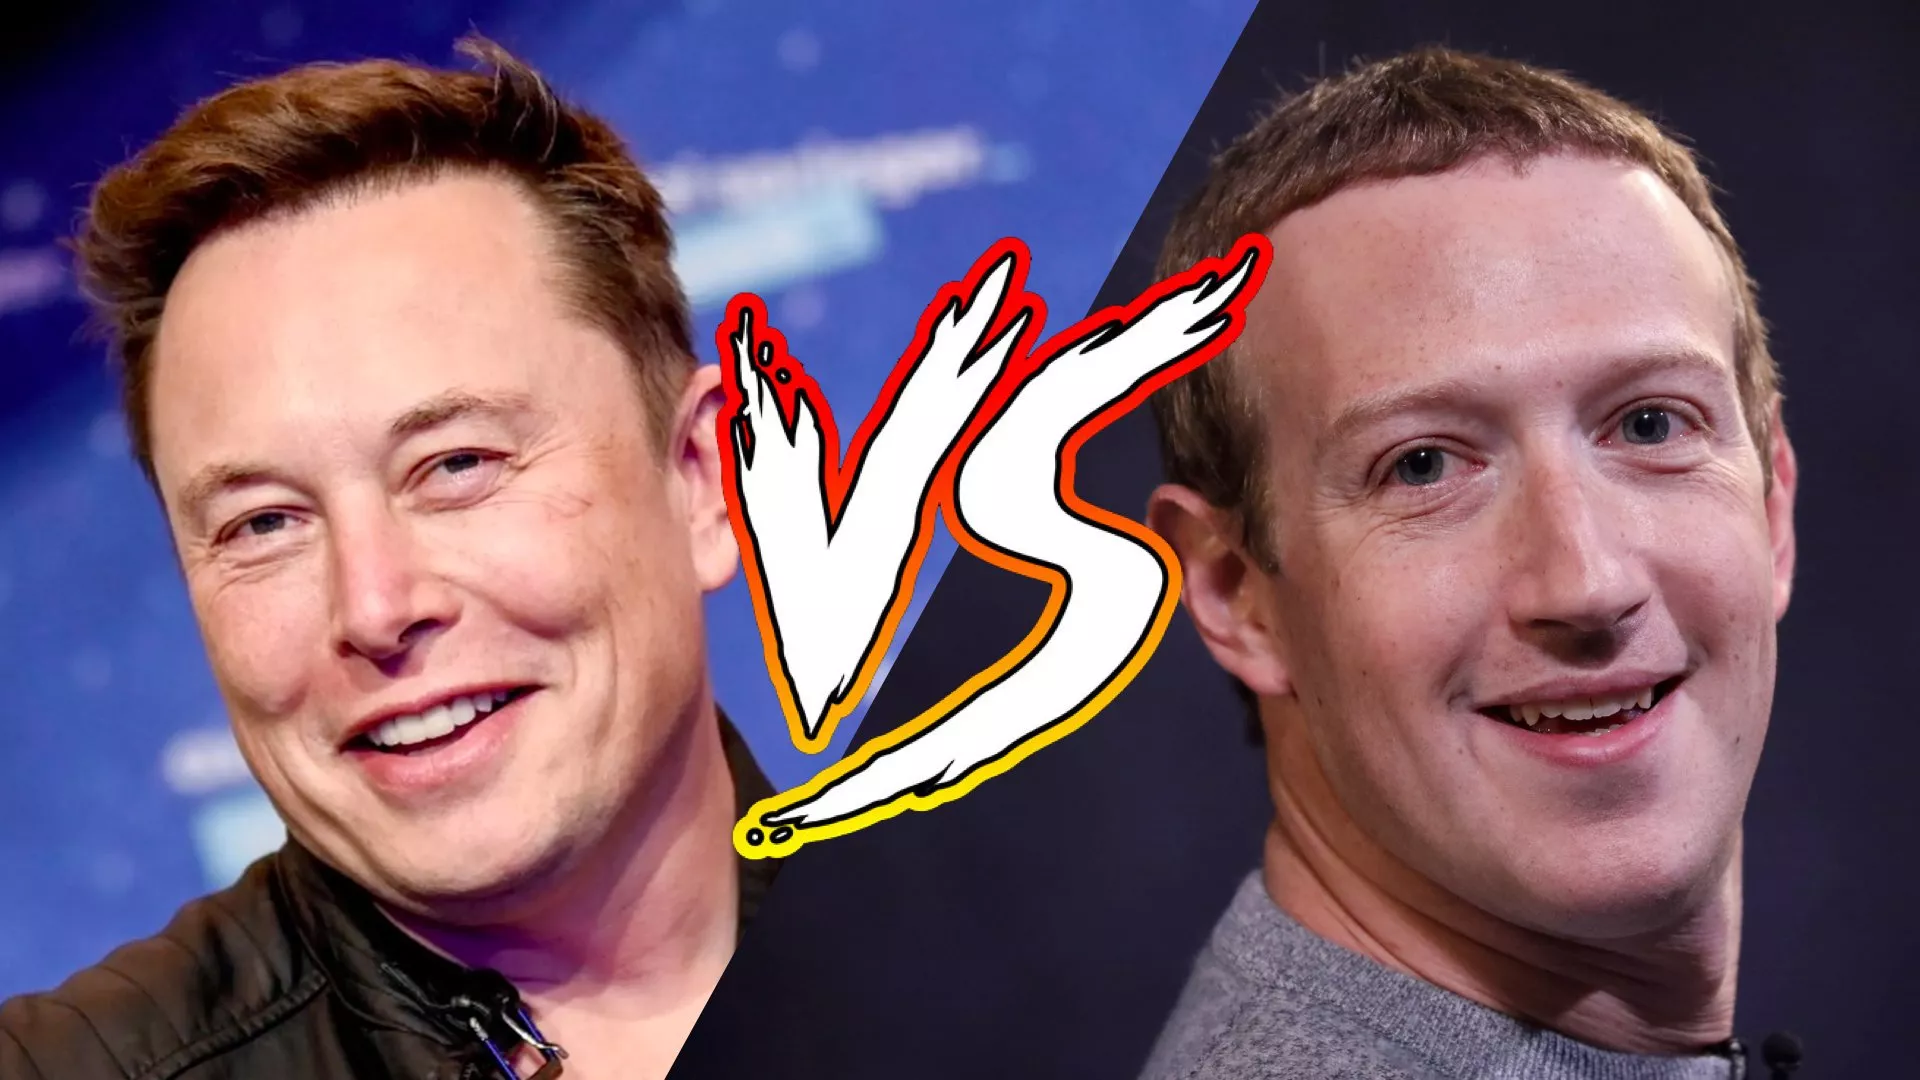 La pelea entre Musk y Zuckerberg se transmitirá en directo a través de X